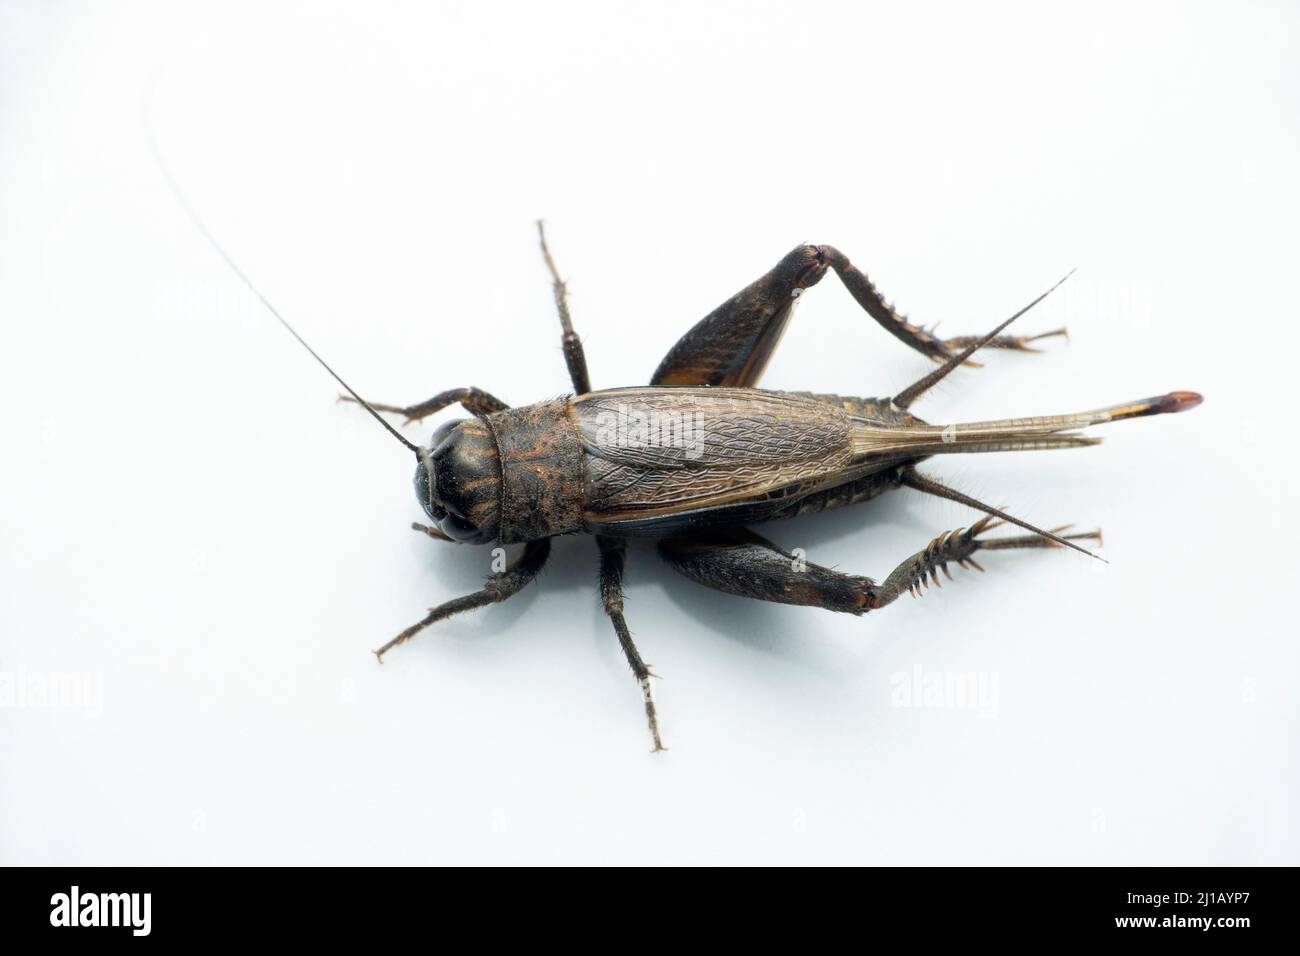 Field cricket insect, Satara, Maharashtra, India Stock Photo